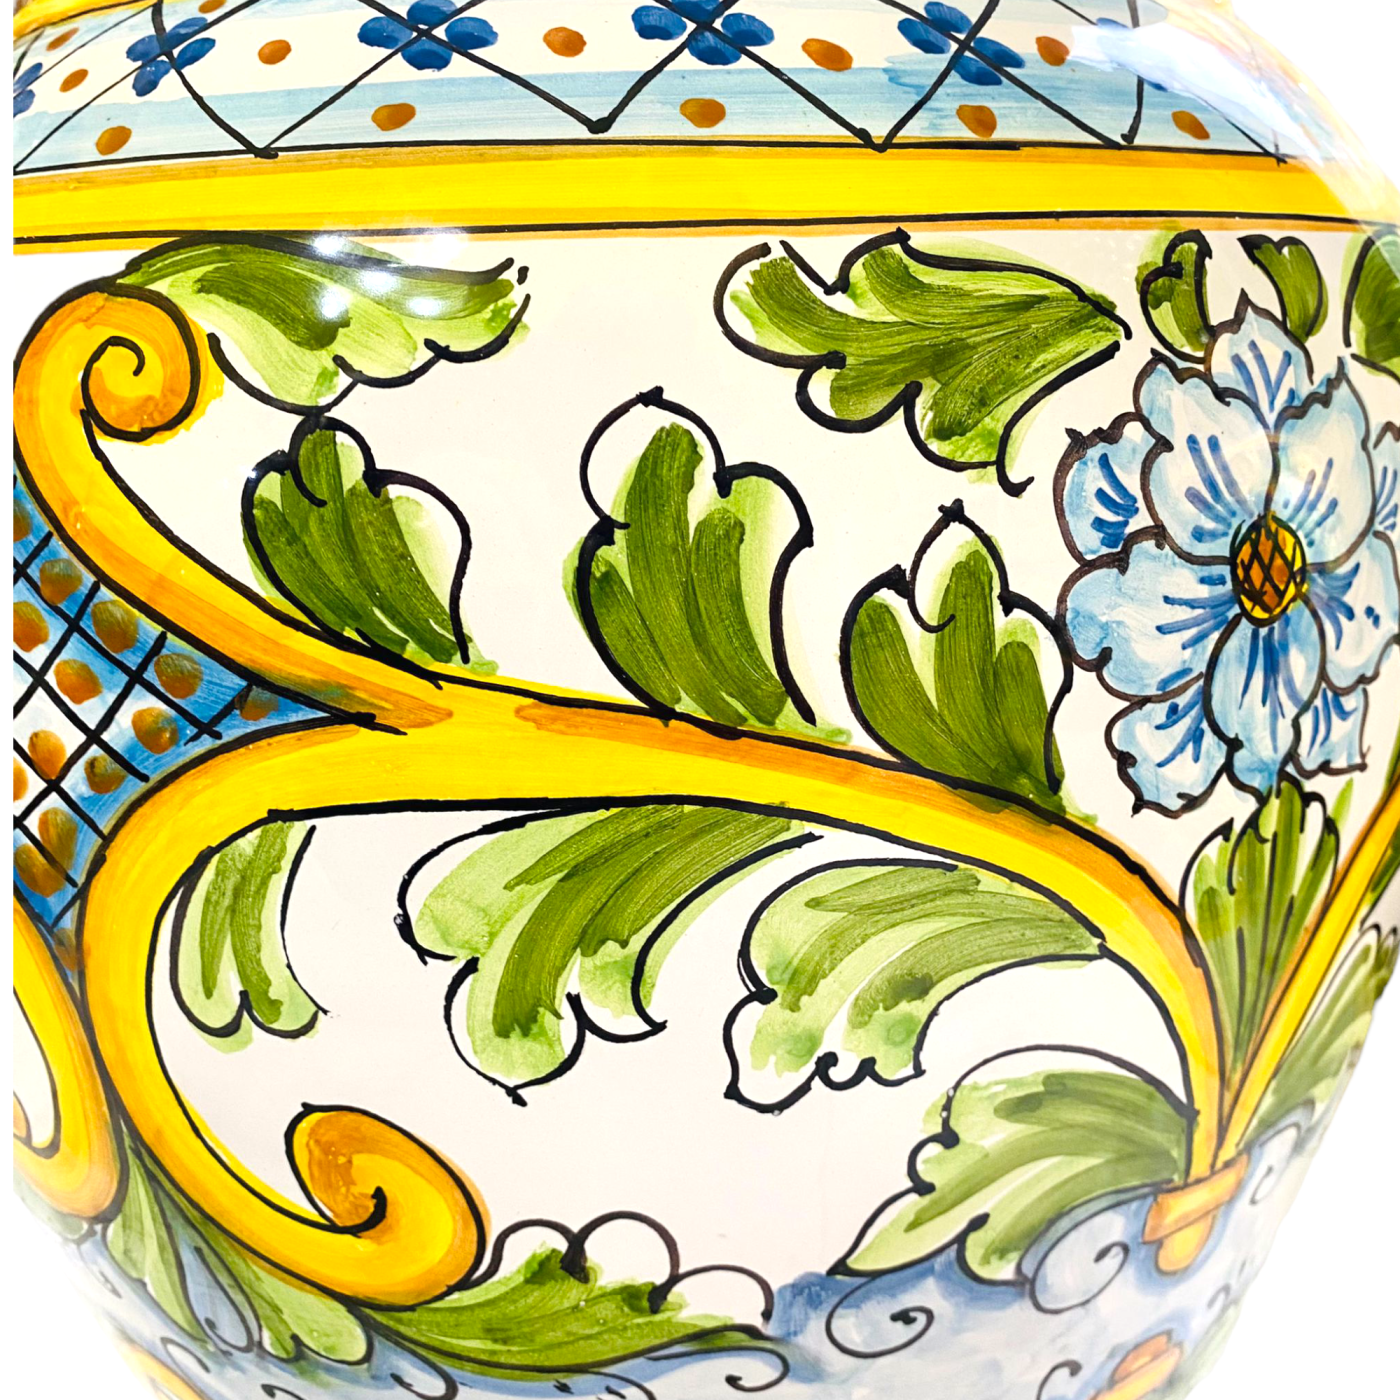 Paragüero vintage de cerámica con una colorida decoración floral - Catawiki